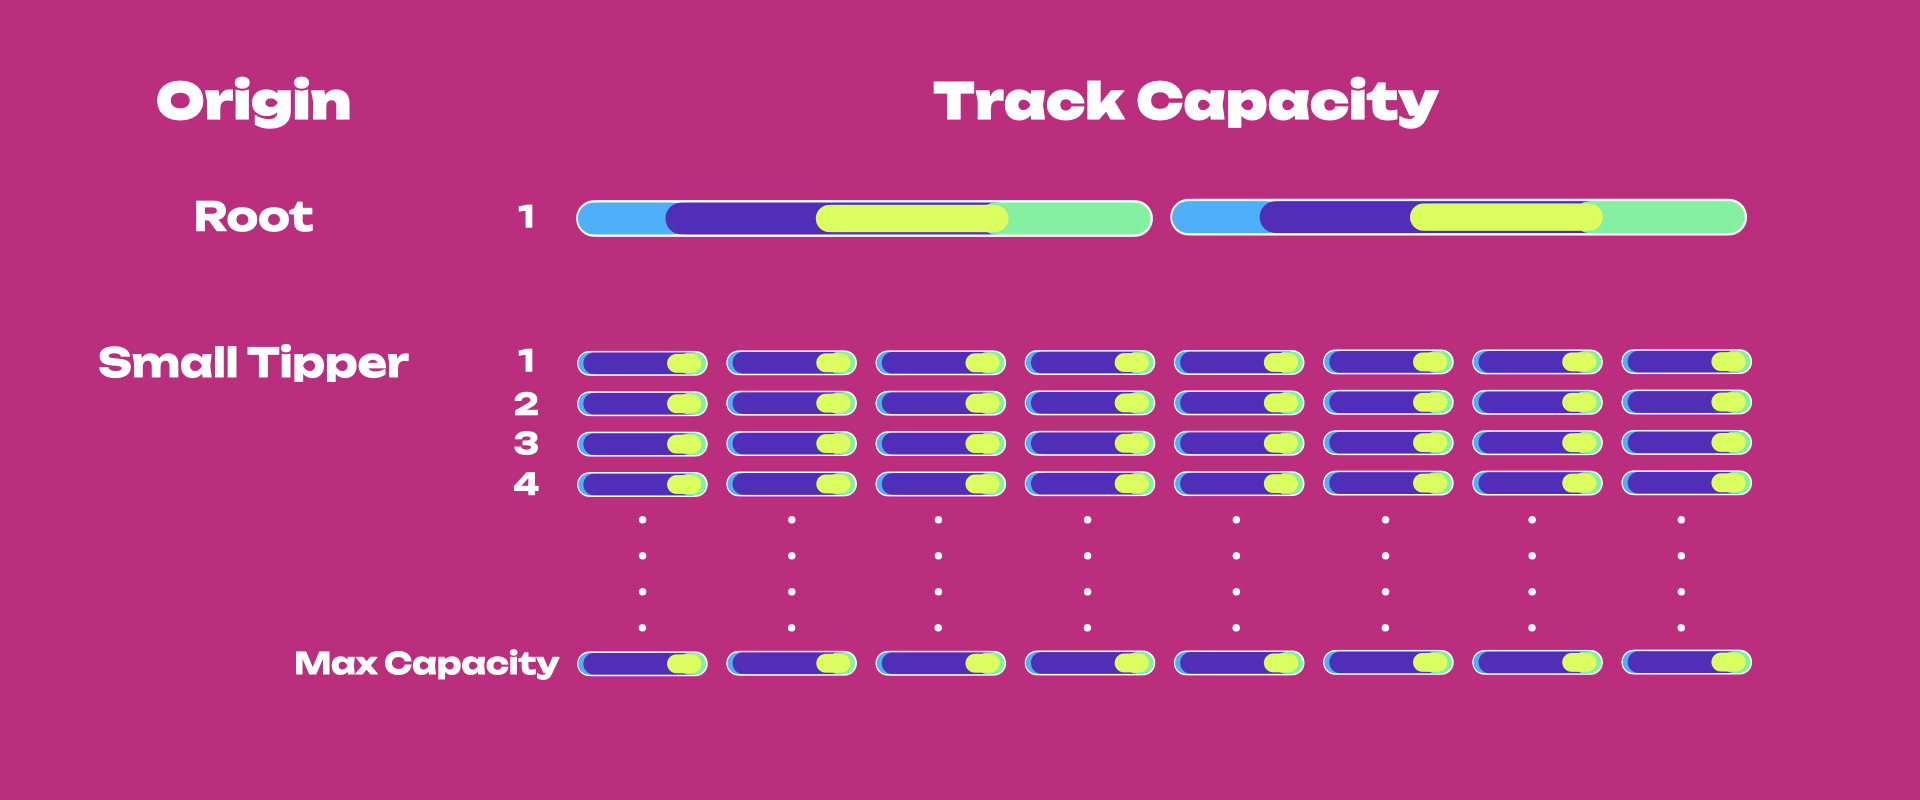 opengov-track-capacity